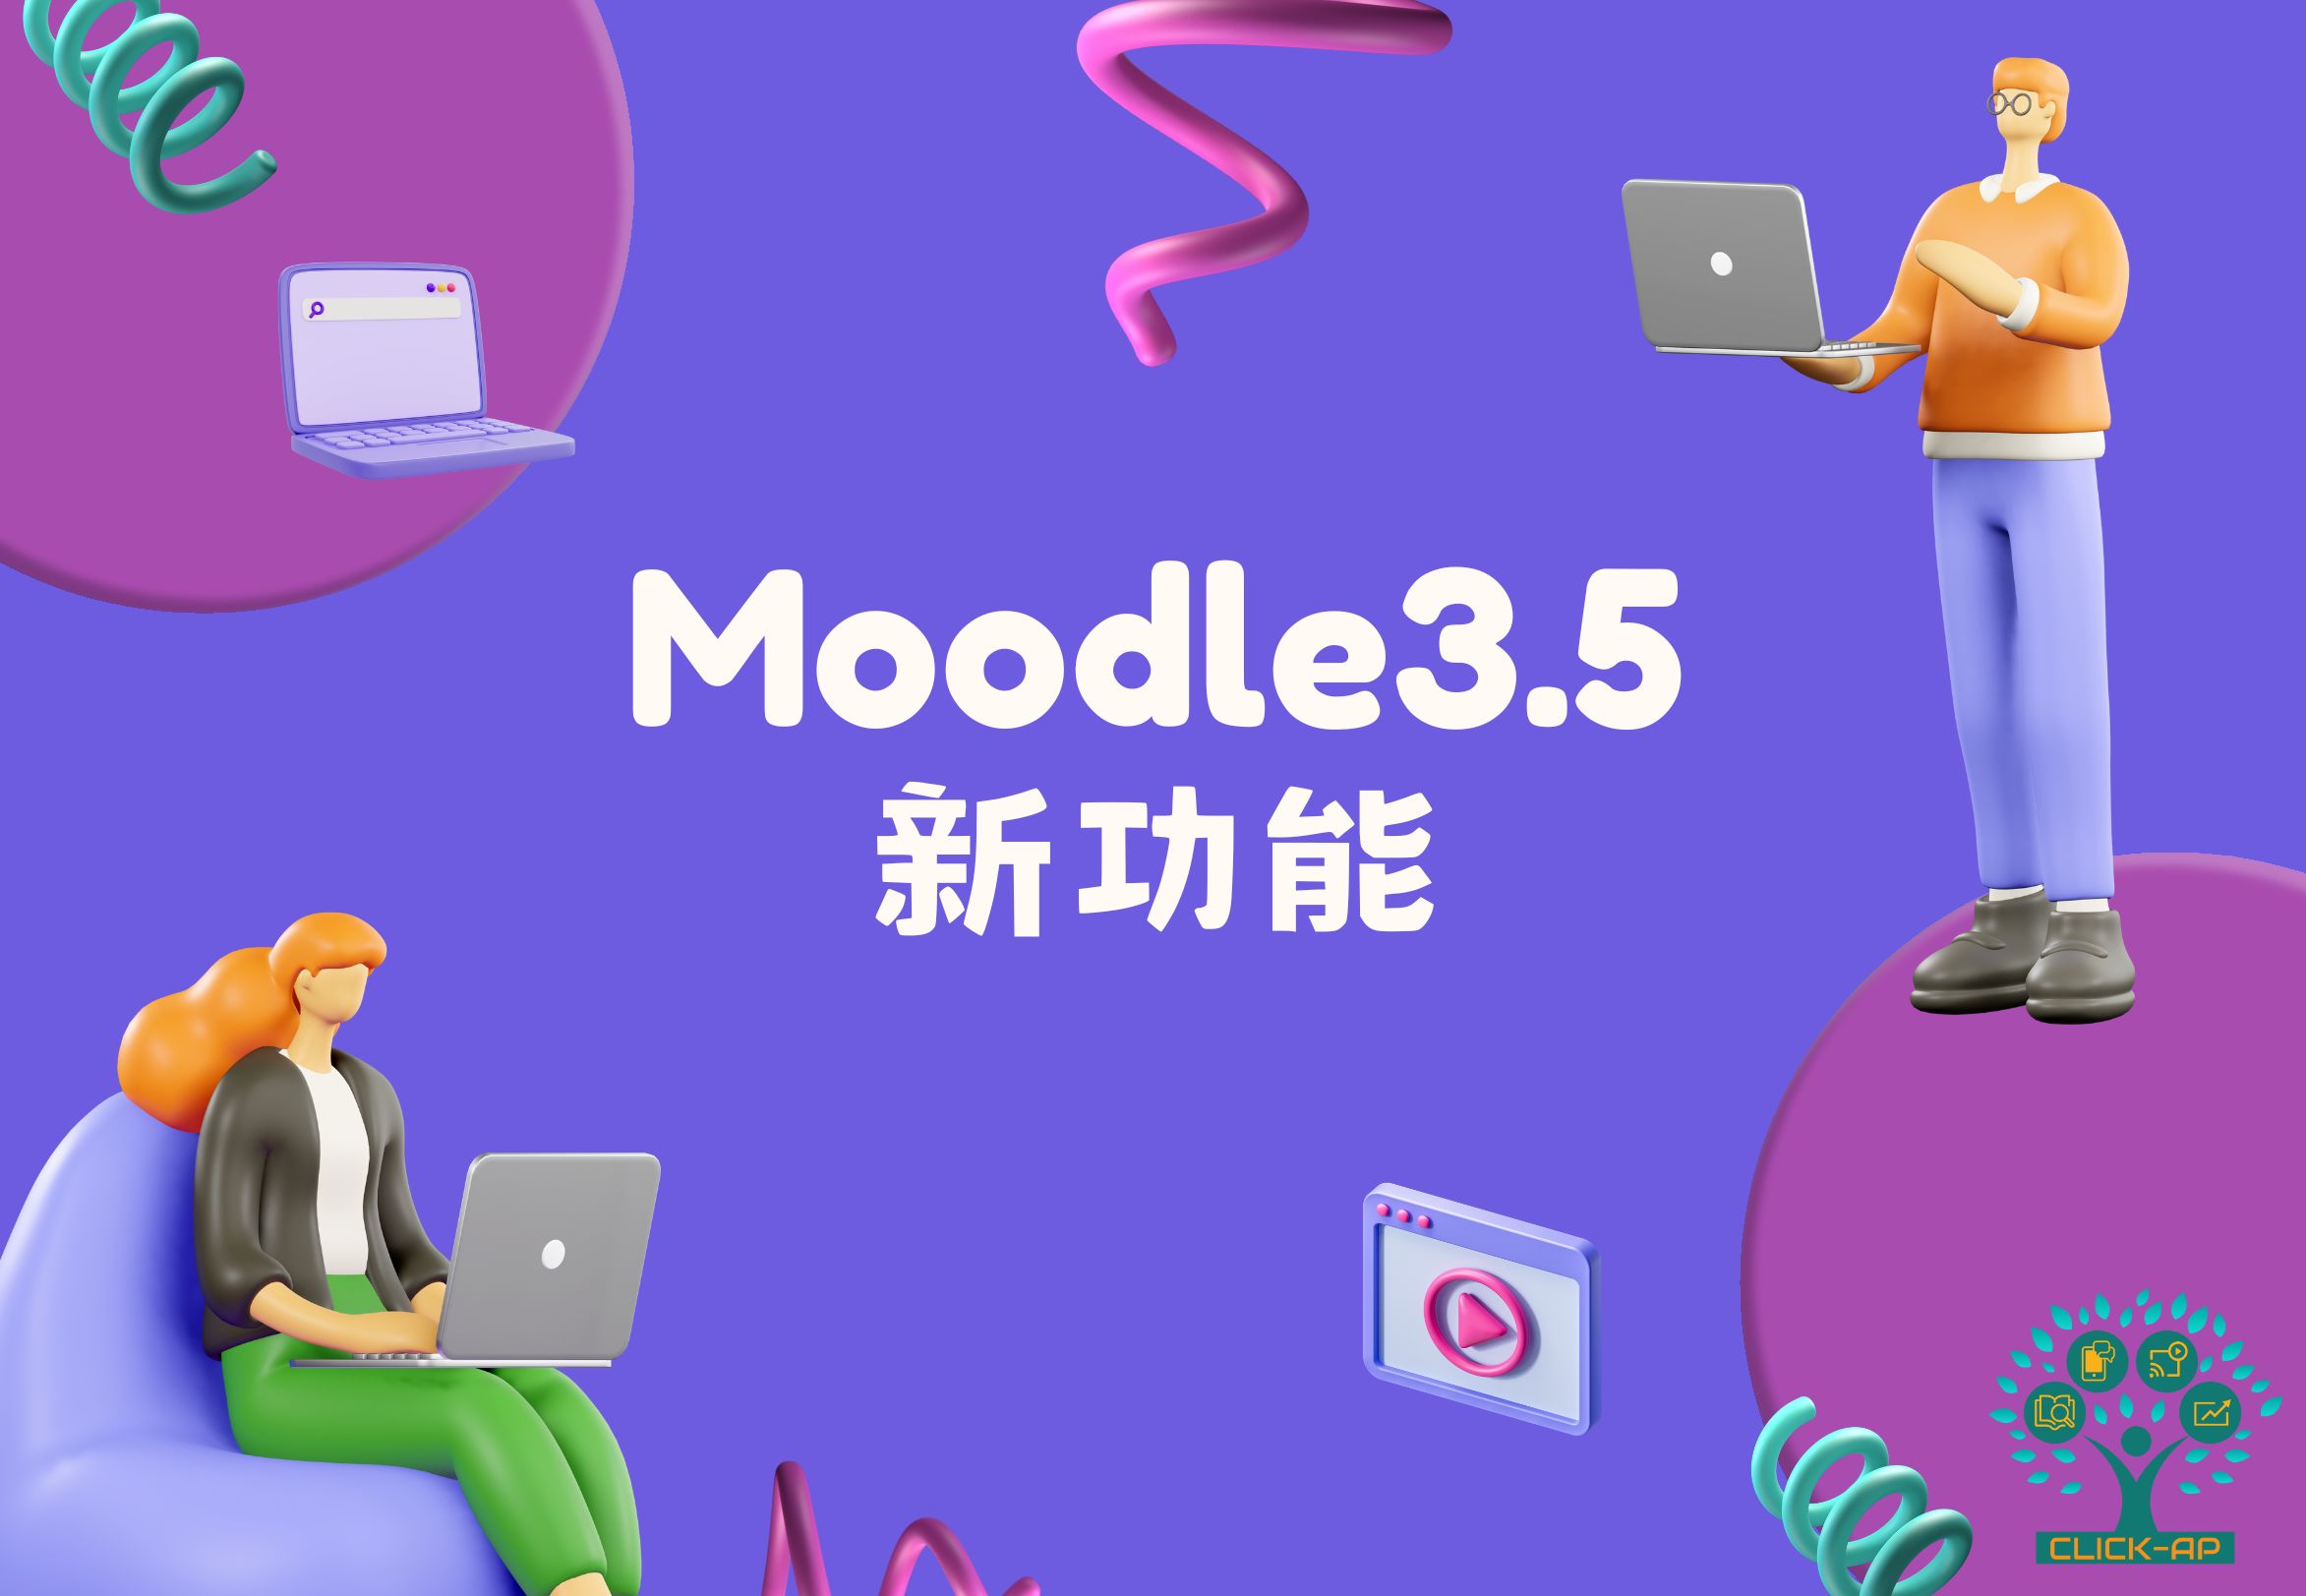 Moodle 3.5 新功能